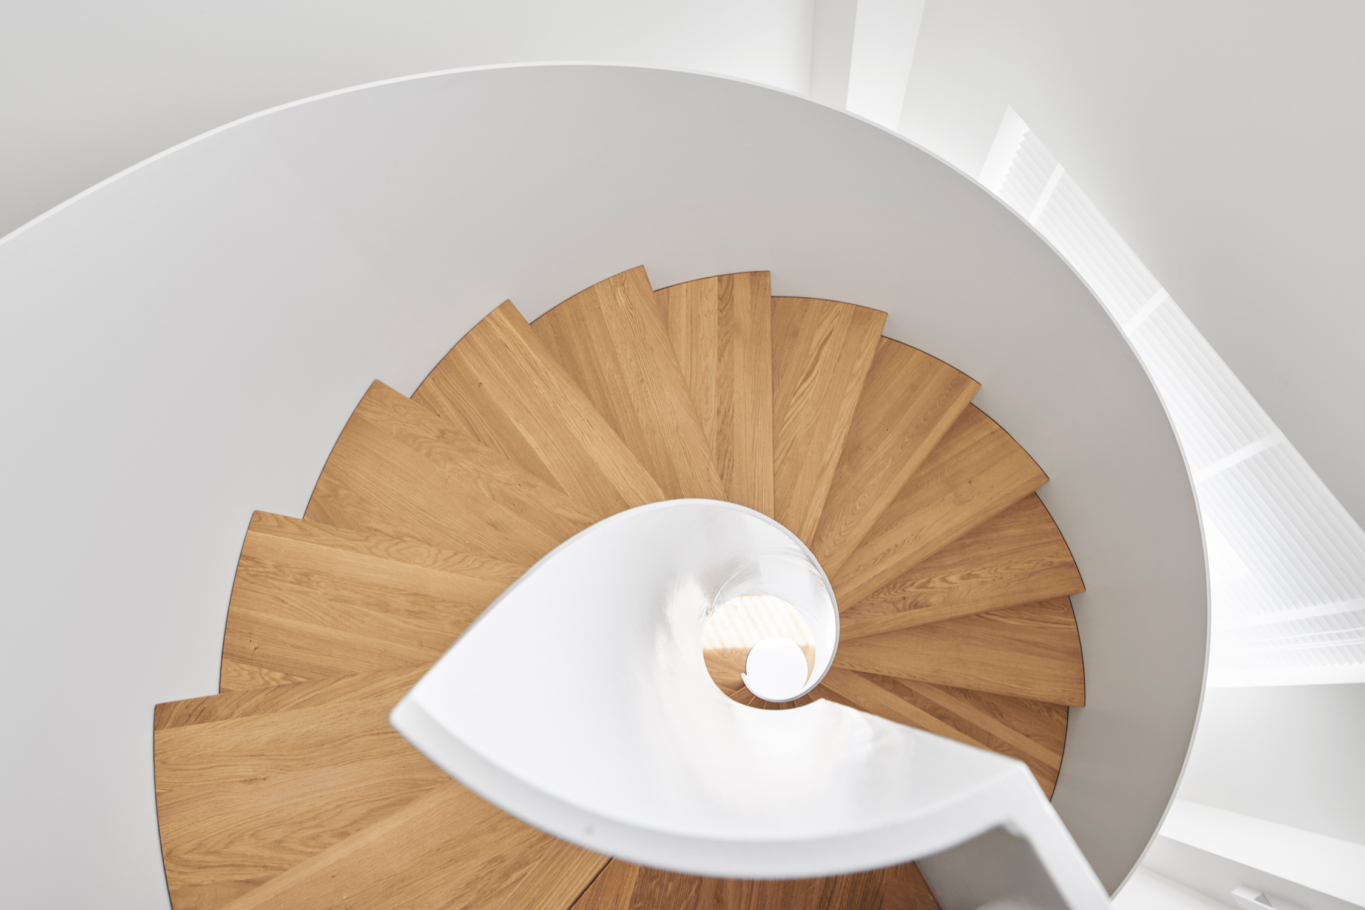 Architekturfotografie: Elegante Wendeltreppe von oben, Materialmix aus weissem Stahl und Stufen aus hellem Holz